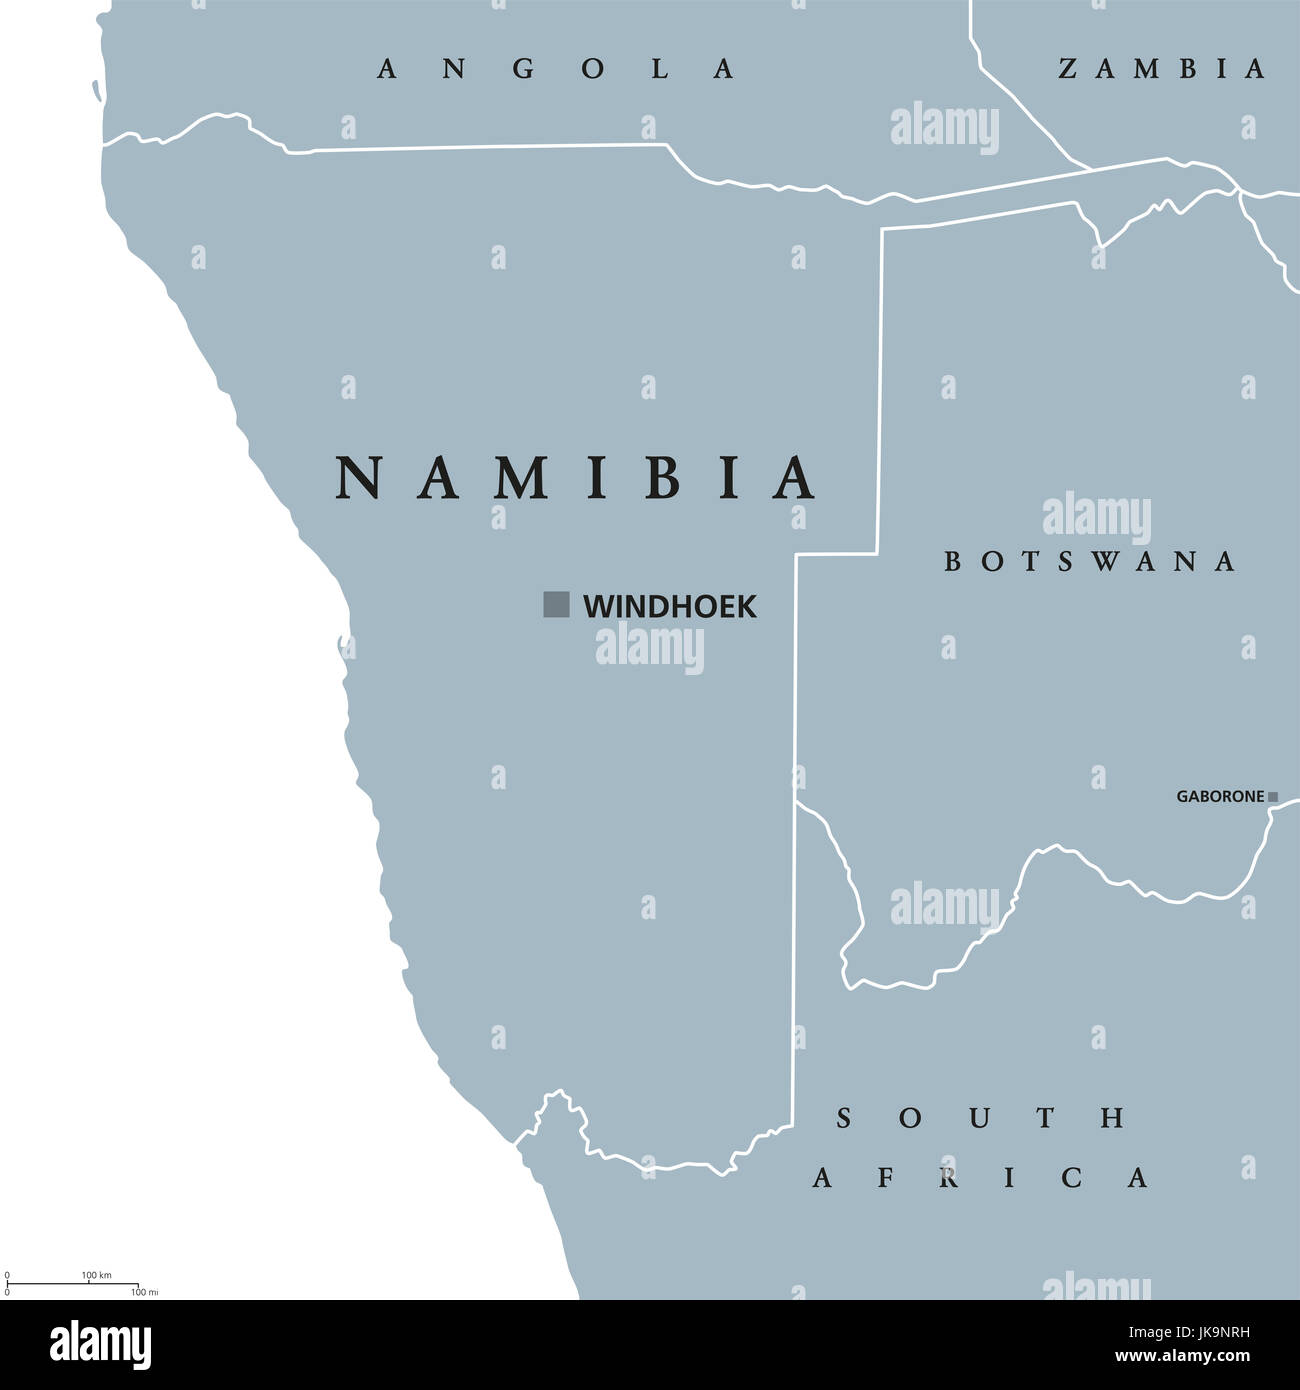 Mapa político con capital de Namibia, Windhoek. República y país en el sur de África, sobre el Océano Atlántico. Ex Africa Sudoccidental alemana. Ilustración. Foto de stock